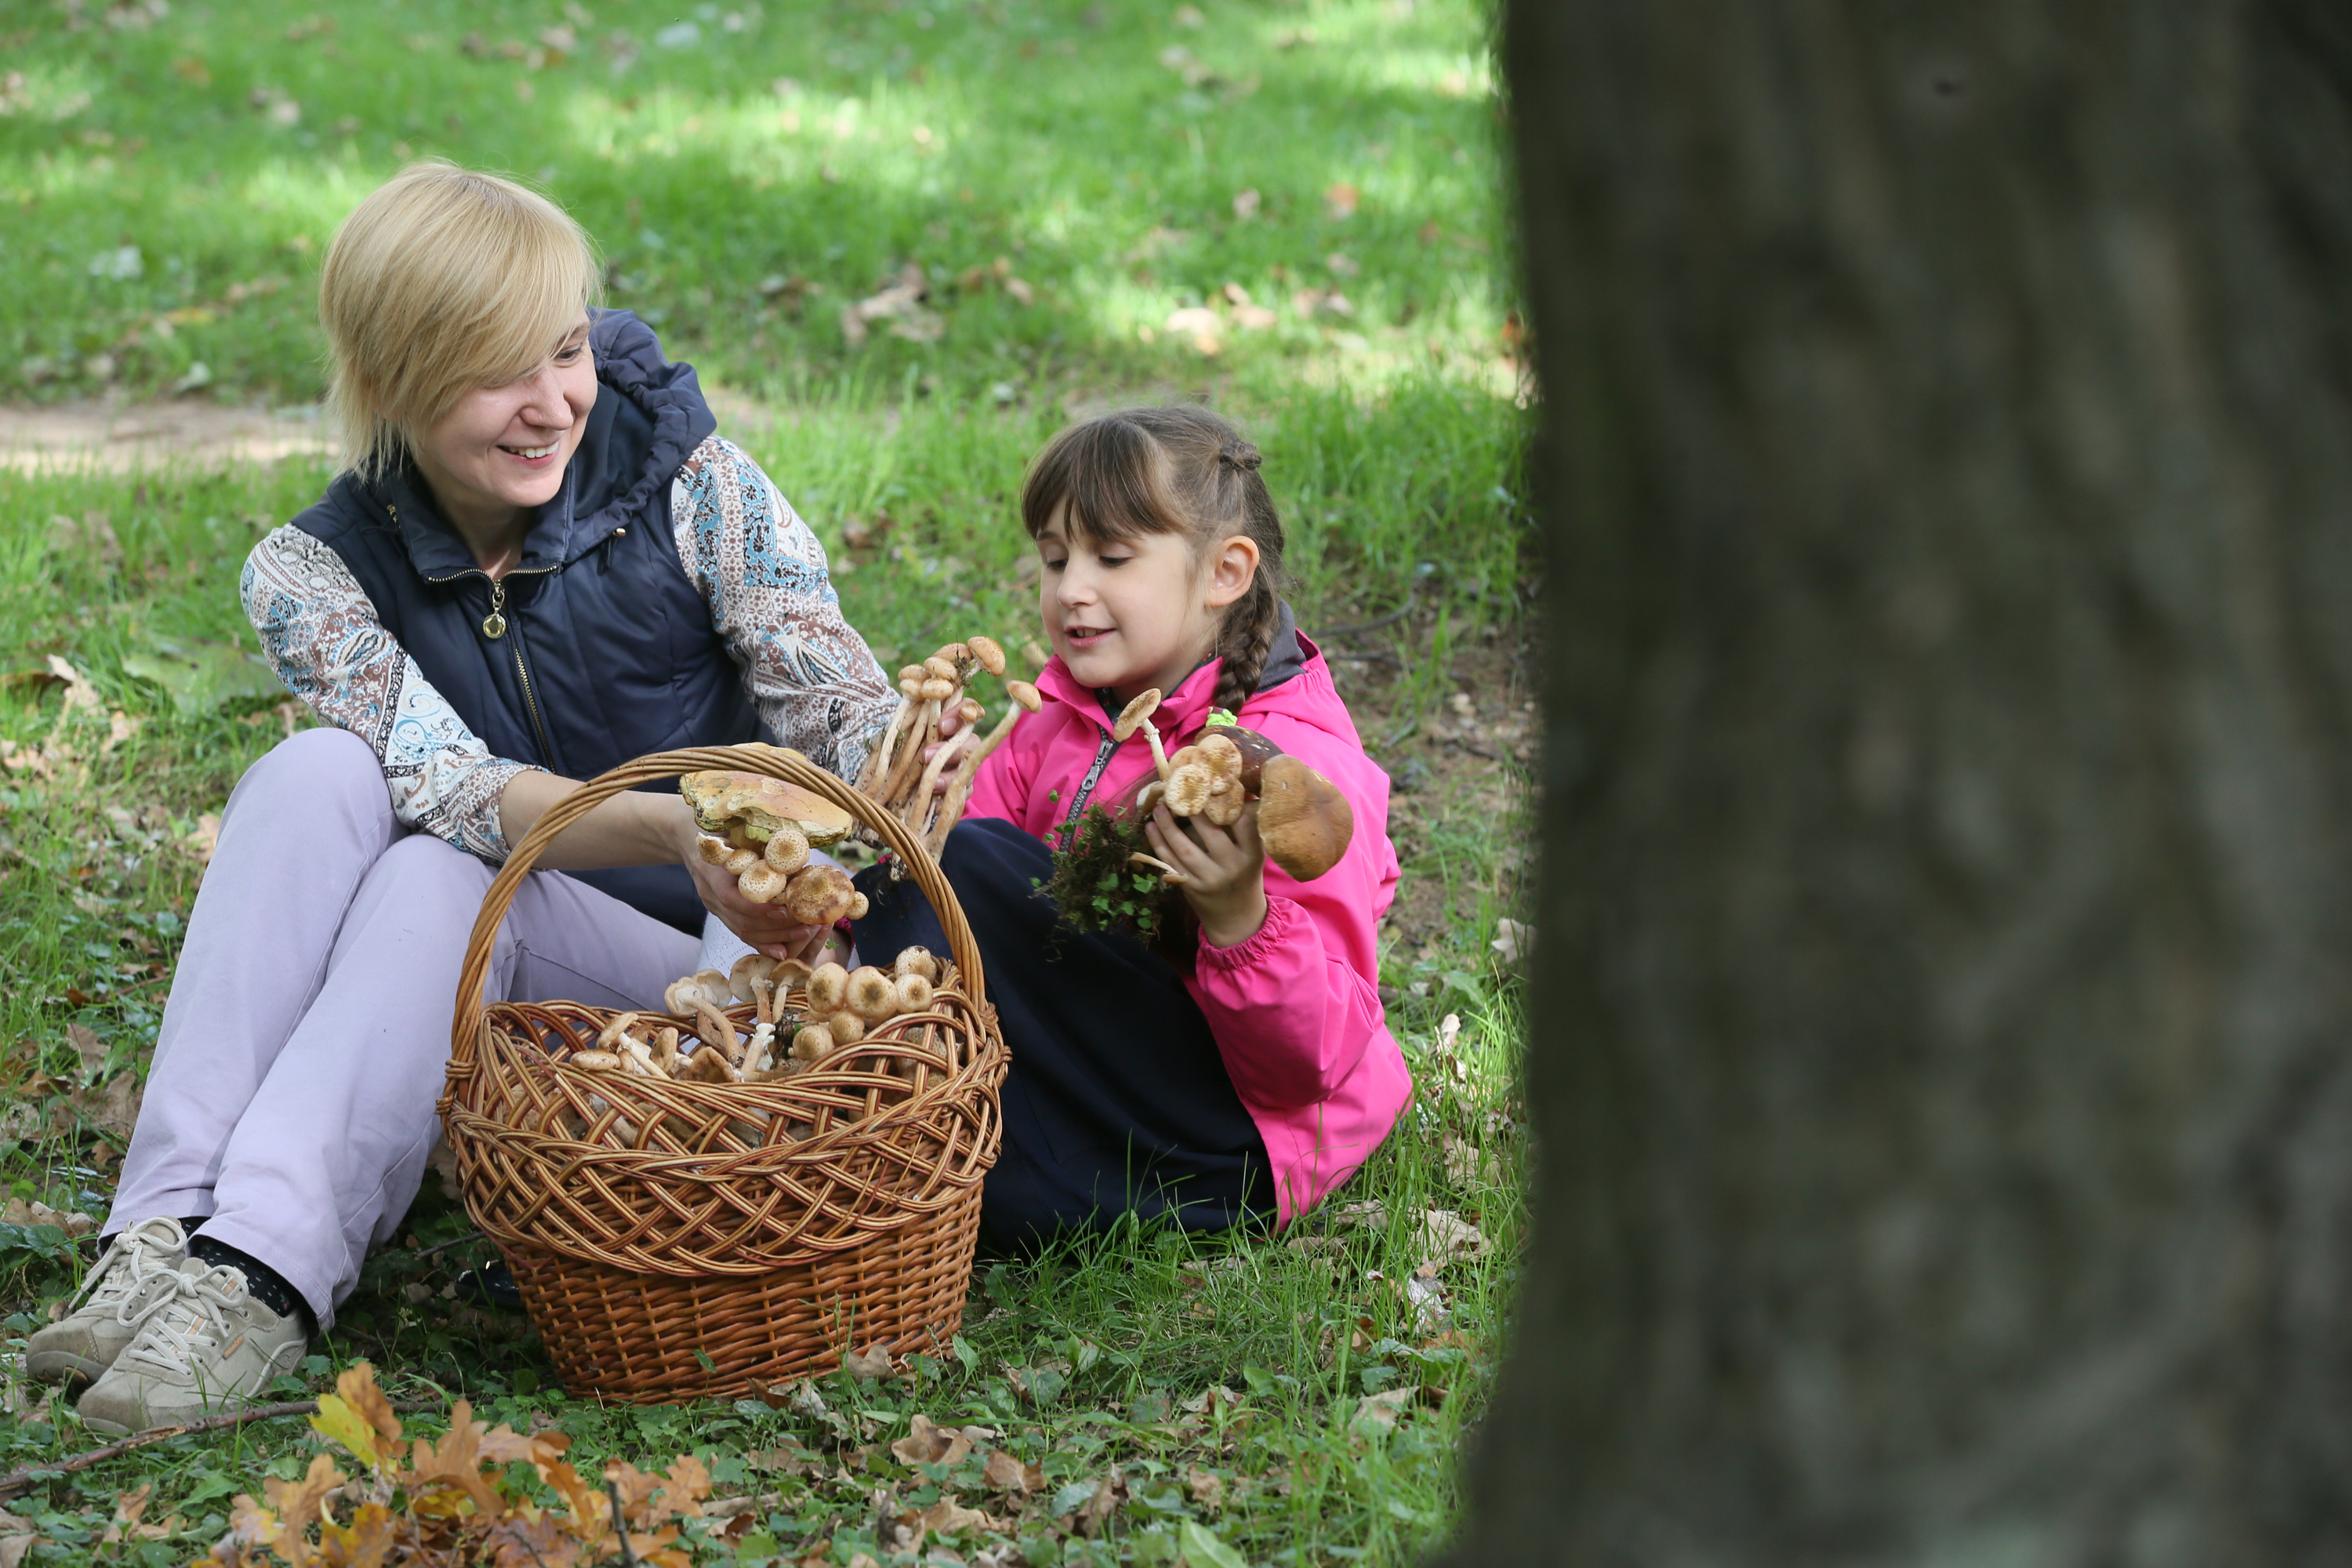 Громадная щедрость. Щедрость в семье. Щедрый ребенок. Осенью в лесу за грибами с семьёй. Фотография щедрости.